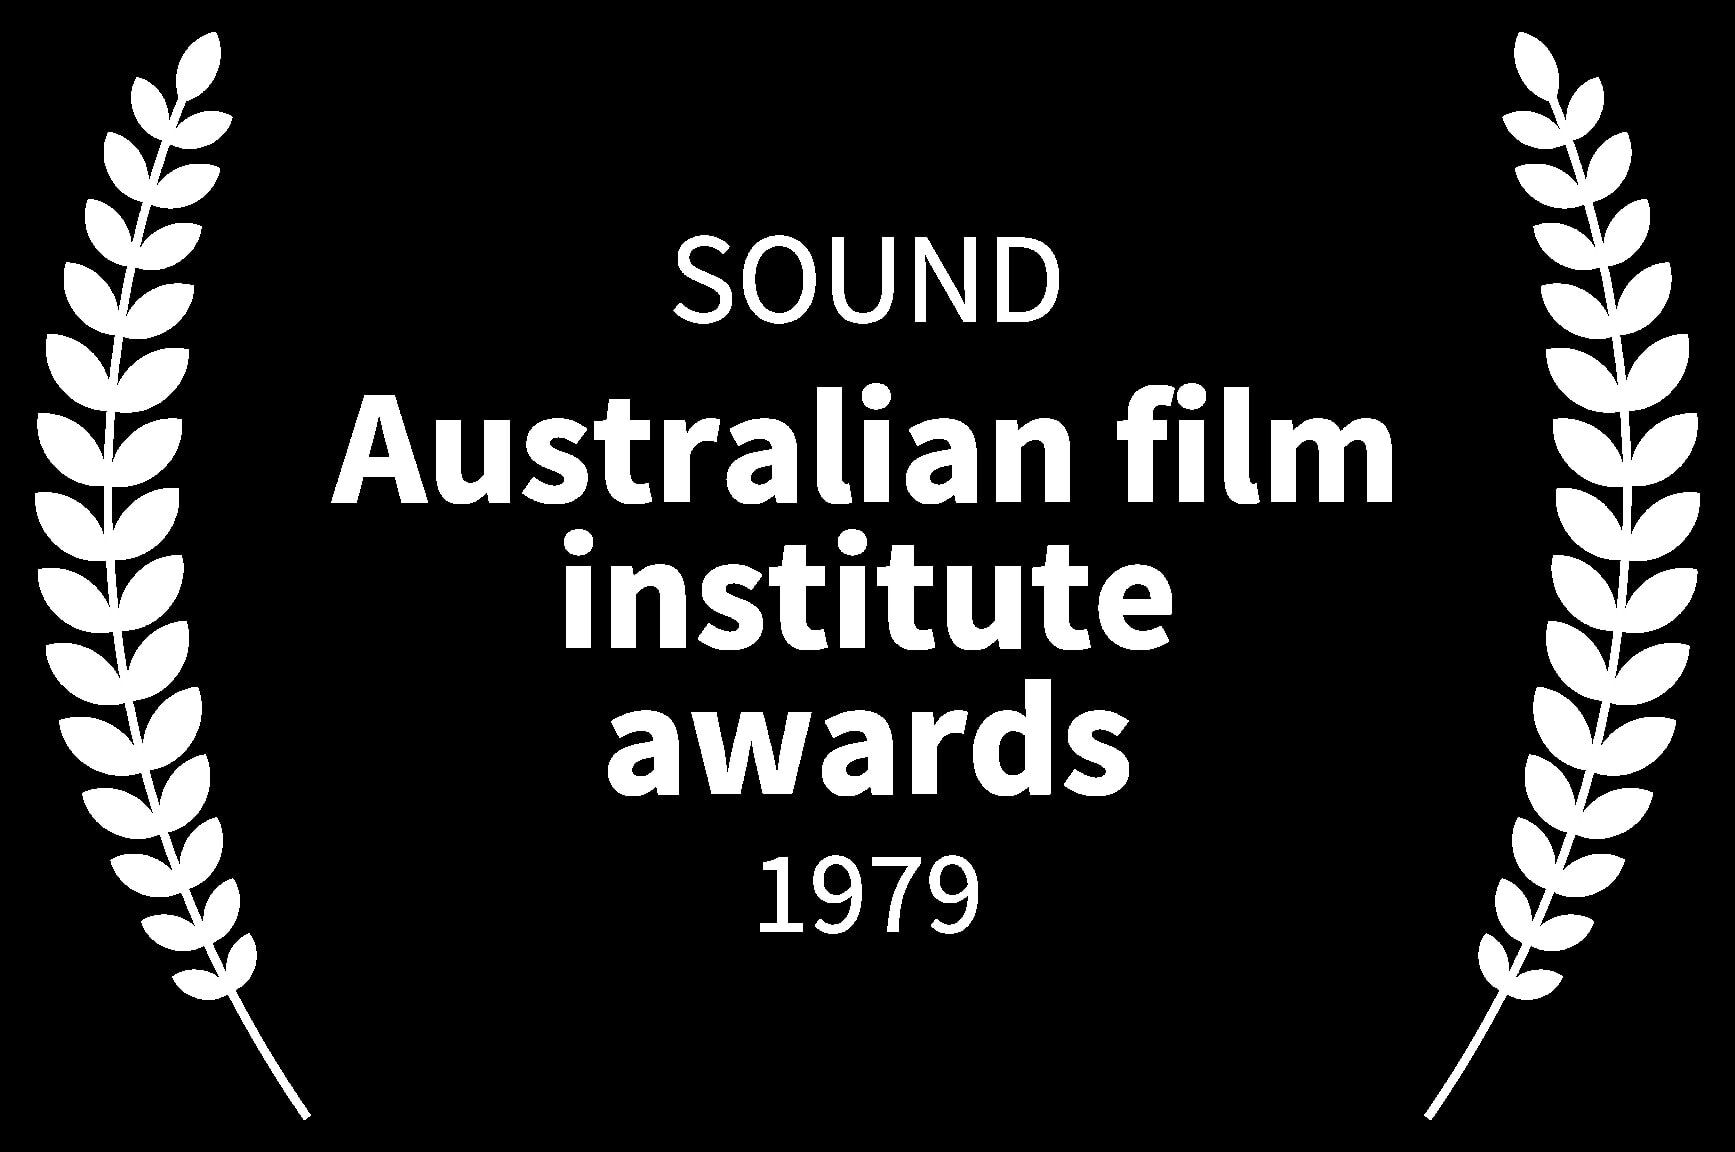 SOUND - Australian film institute awards - 1979 - MAD MAX